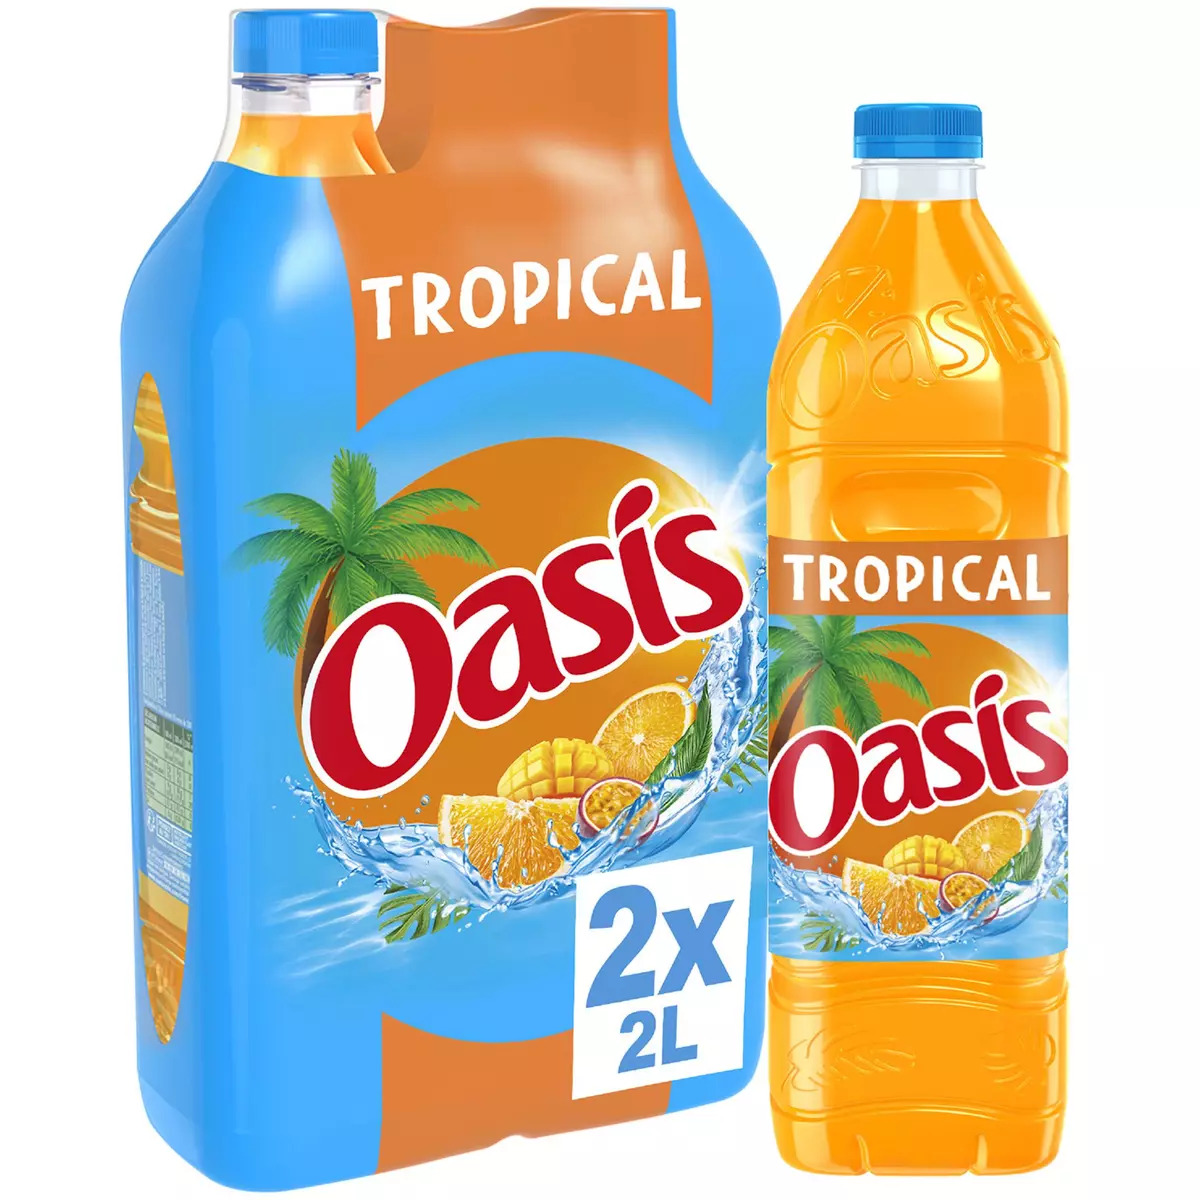 OASIS Boisson aux fruits goût tropical 2x2l